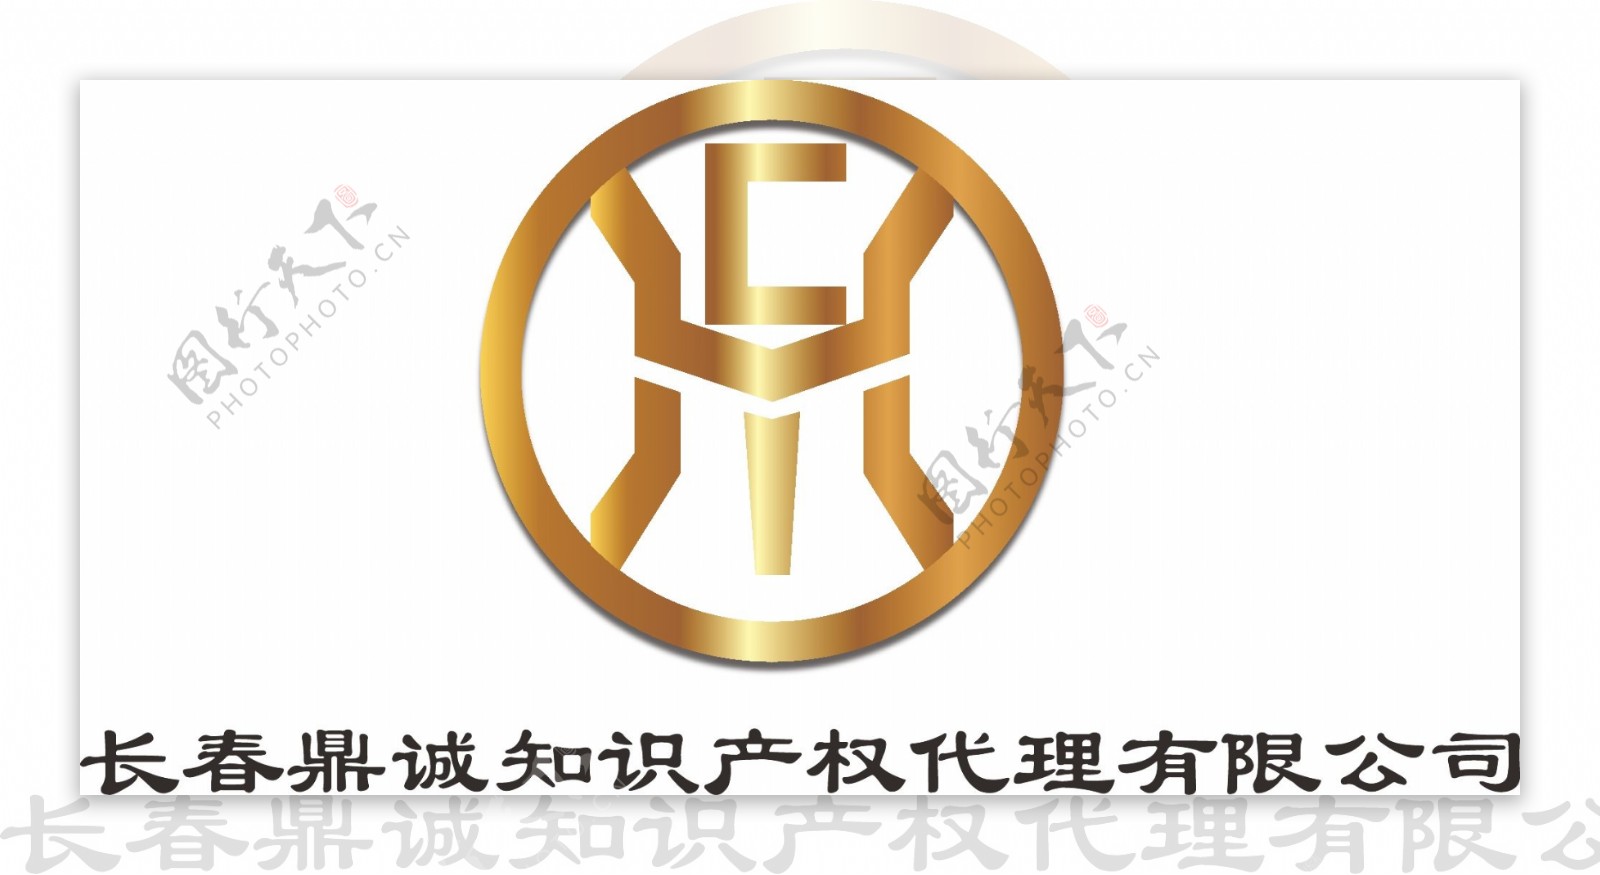 代理公司鼎诚logo设计